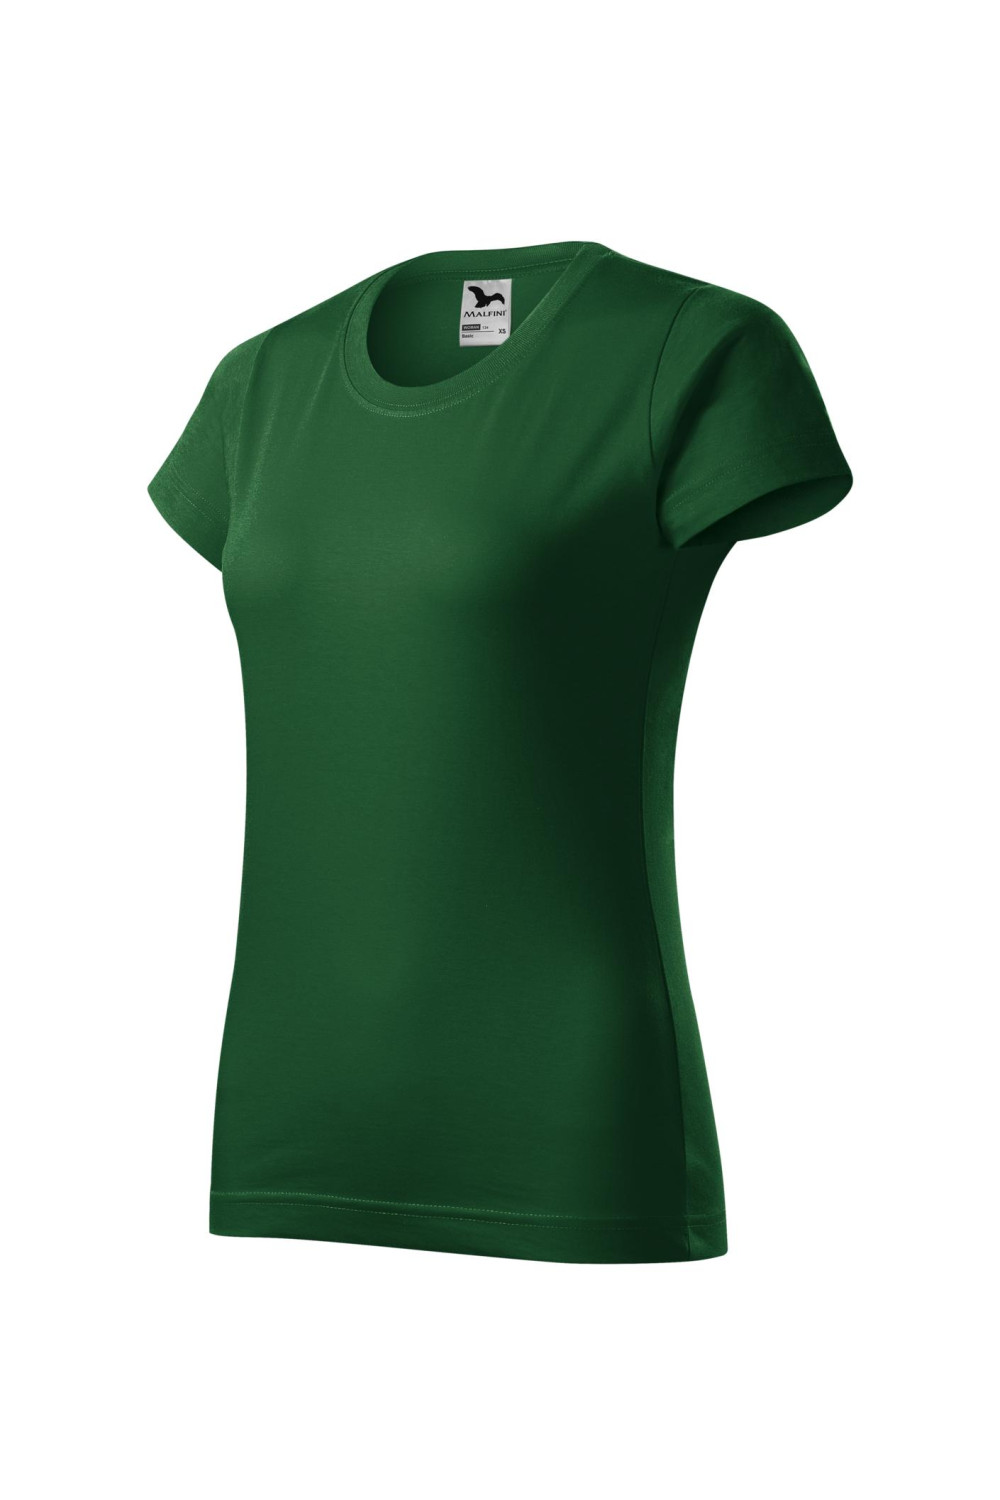 BASIC 134 MALFINI Koszulka damska 100% bawełna t-shirt zieleń butelkowa